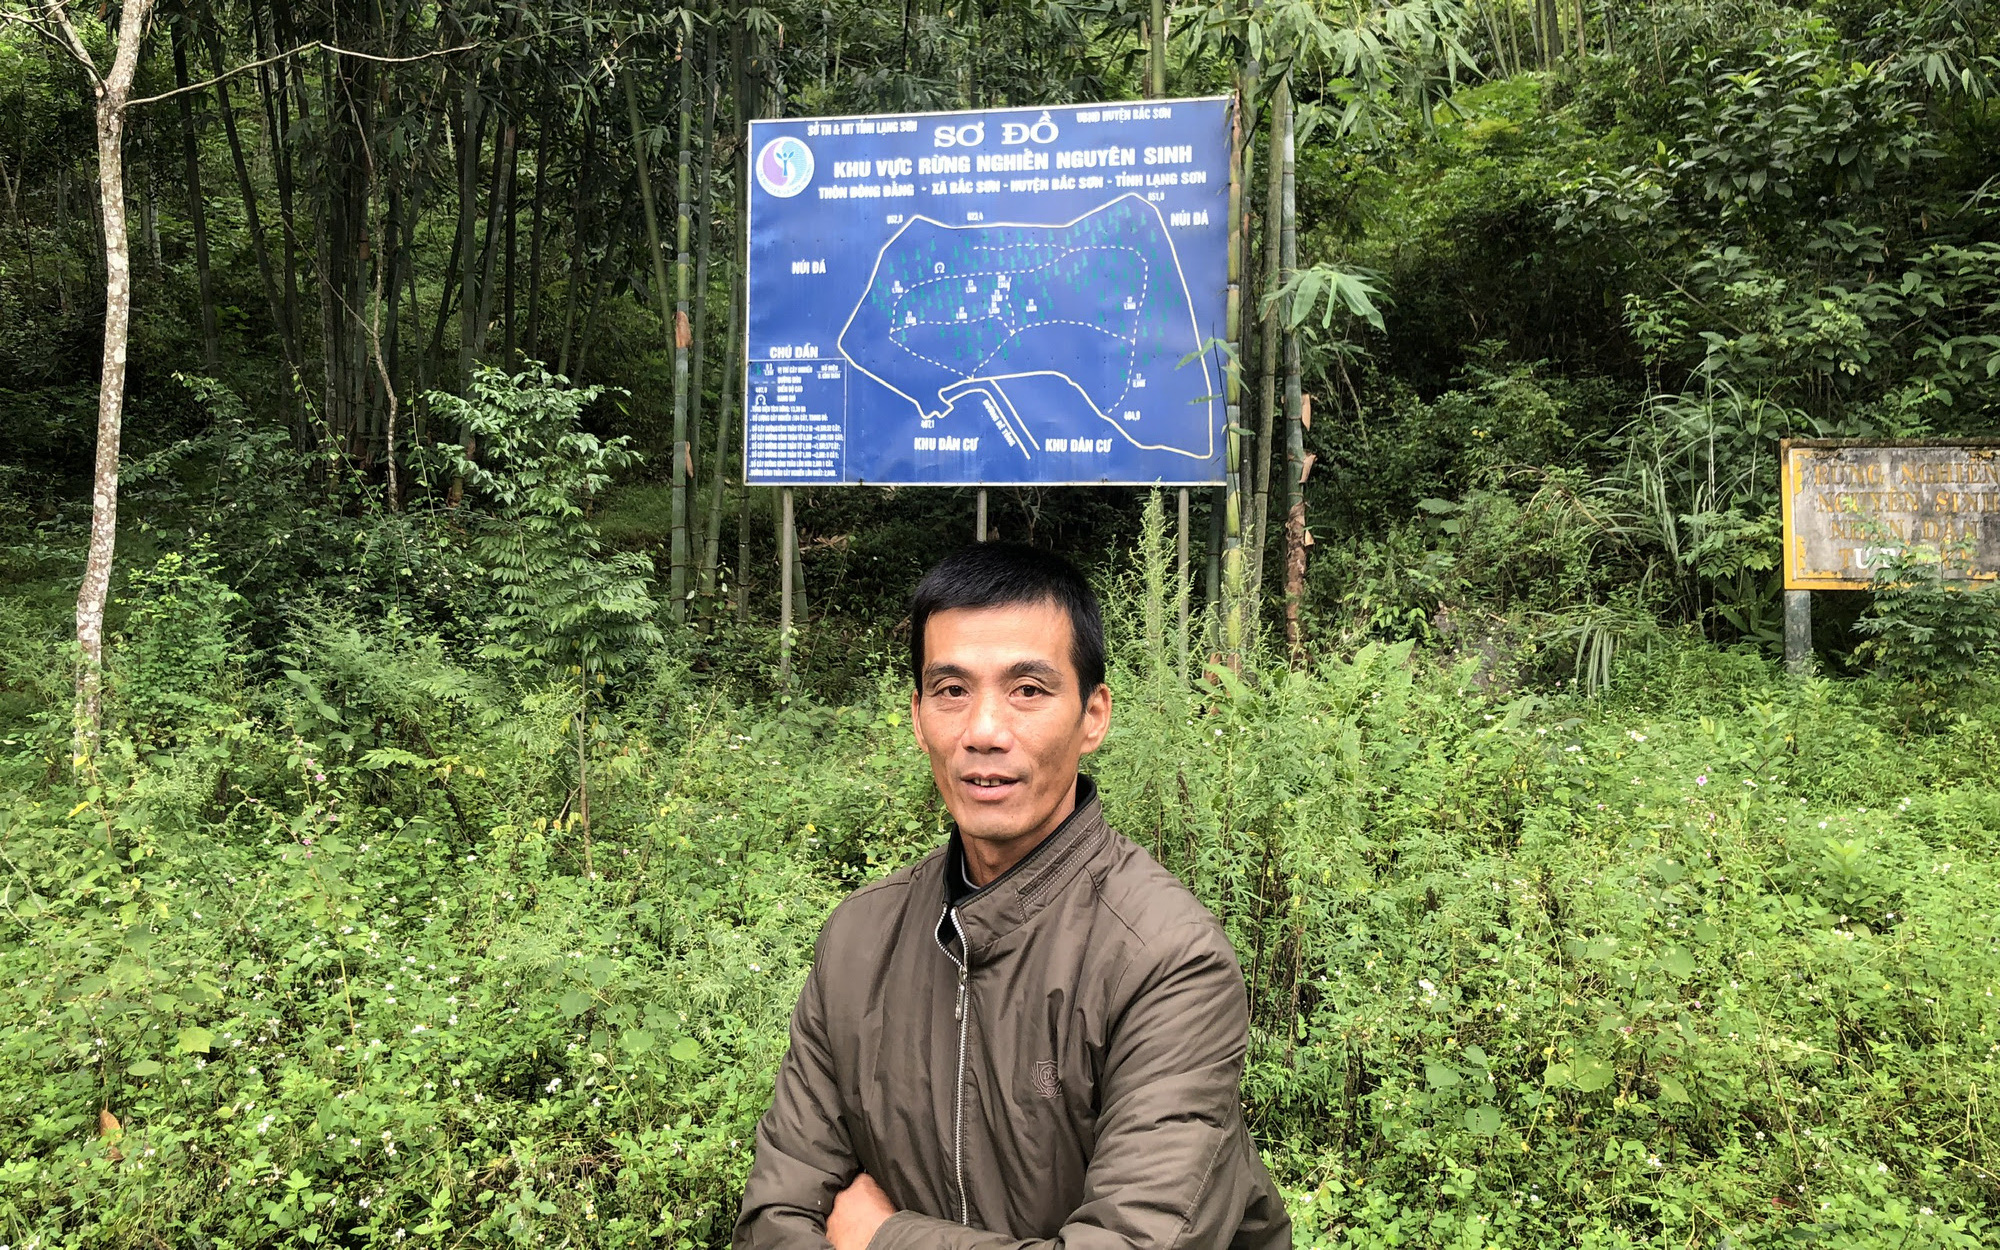 Cả thôn người Tày canh giữ rừng cây quý ví như "kho vàng lộ thiên" ở núi rừng tỉnh Lạng Sơn